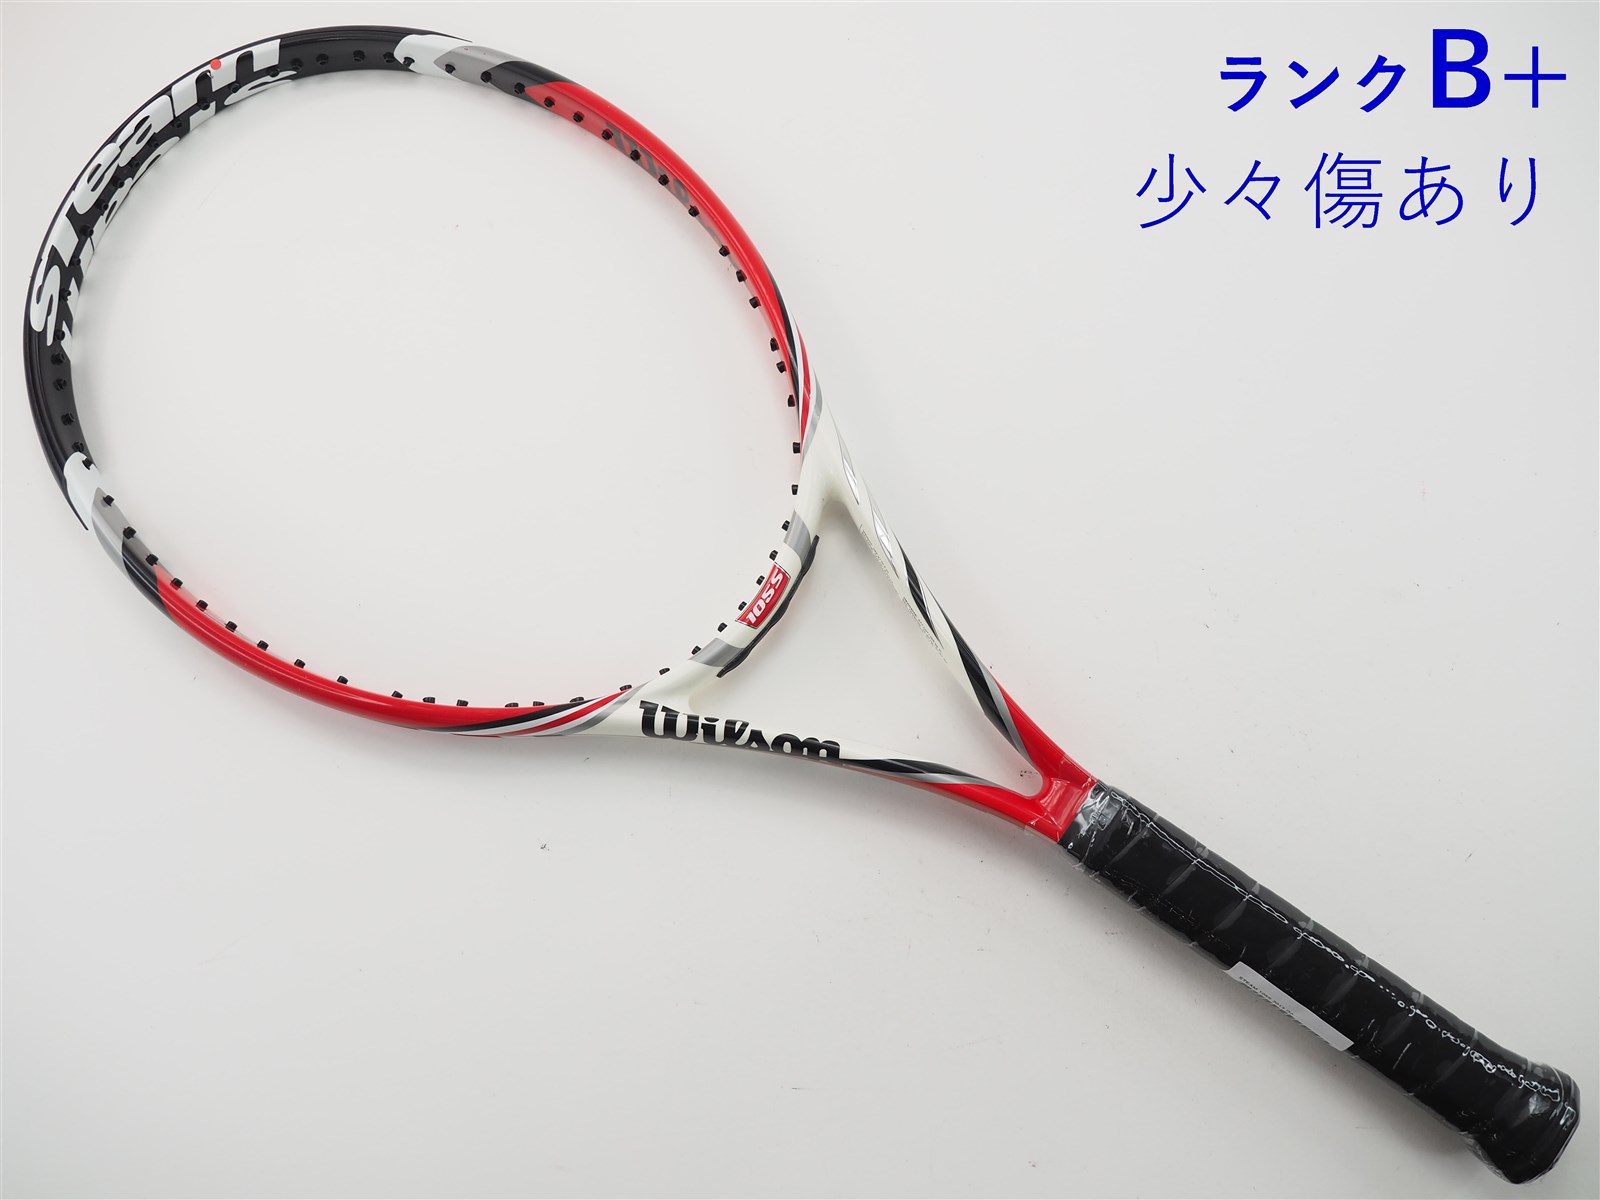 テニスラケット ウィルソン スティーム 105エス 2013年モデル (G2)WILSON STEAM 105S 2013 - スポーツ別